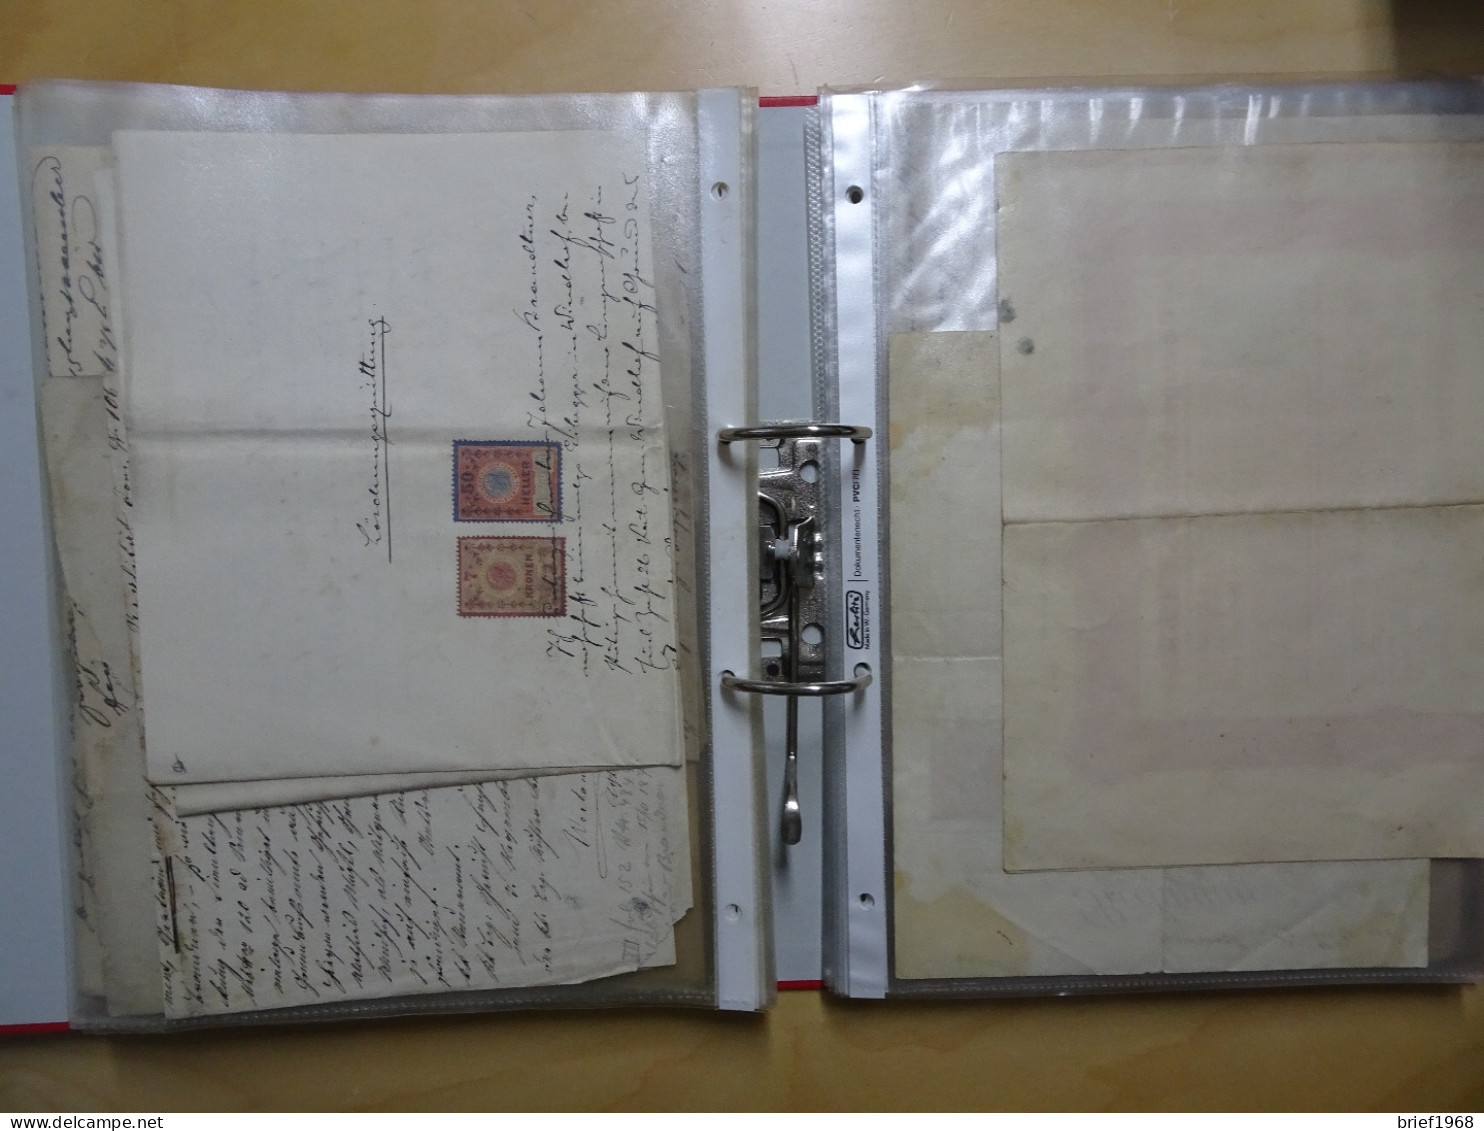 Österreich Sammlung mit Fiskalbelegen, Gebührenmarken, Dokumente (9476)